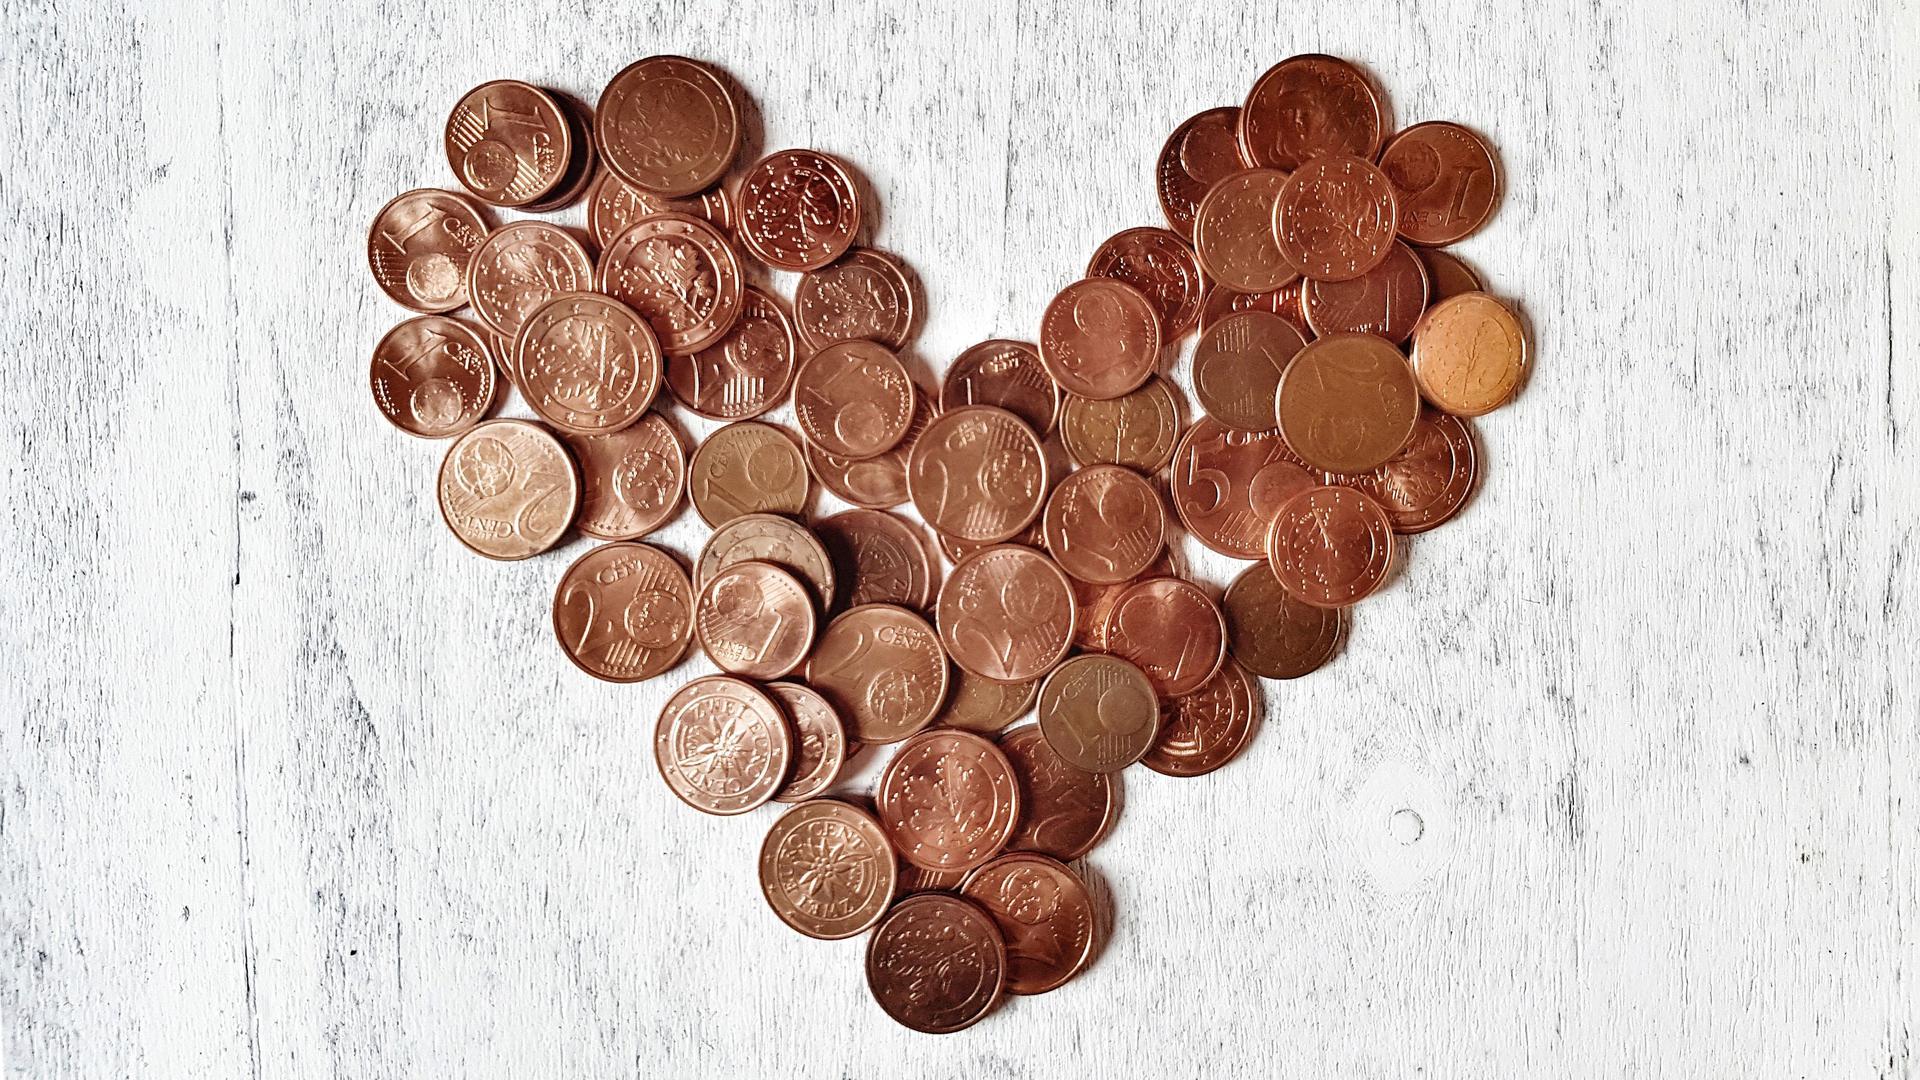 Nahaufnahme von Cent-Münzen in Herzform auf einem hellen Holzuntergrund angeordnet.